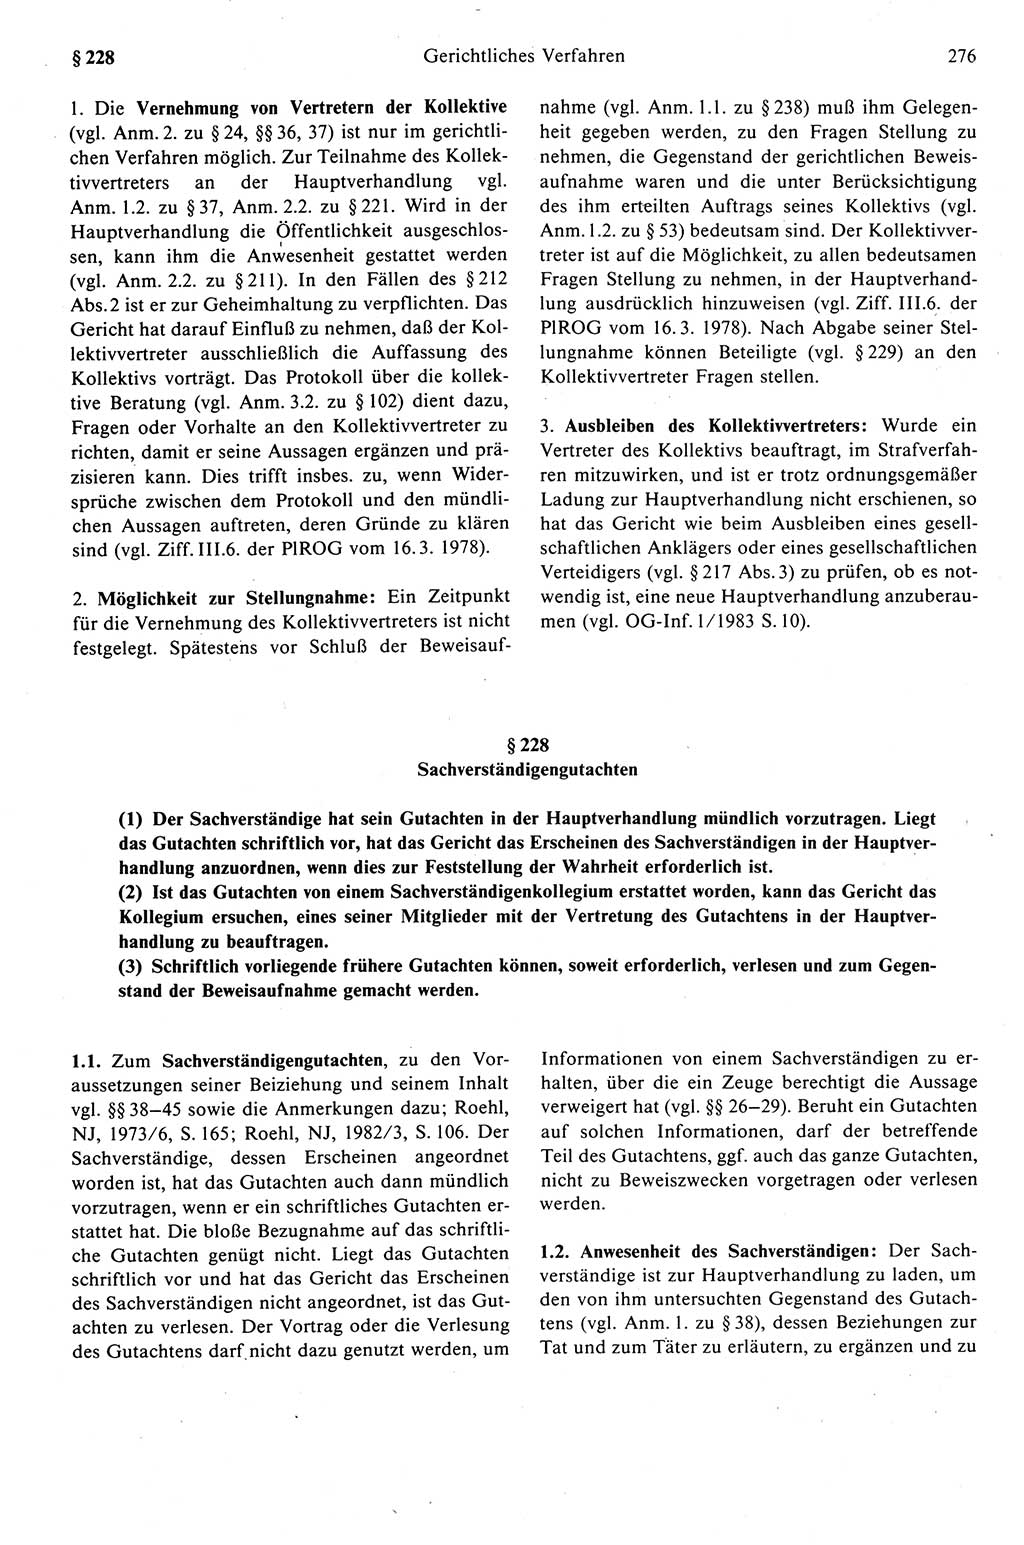 Strafprozeßrecht der DDR (Deutsche Demokratische Republik), Kommentar zur Strafprozeßordnung (StPO) 1989, Seite 276 (Strafprozeßr. DDR Komm. StPO 1989, S. 276)